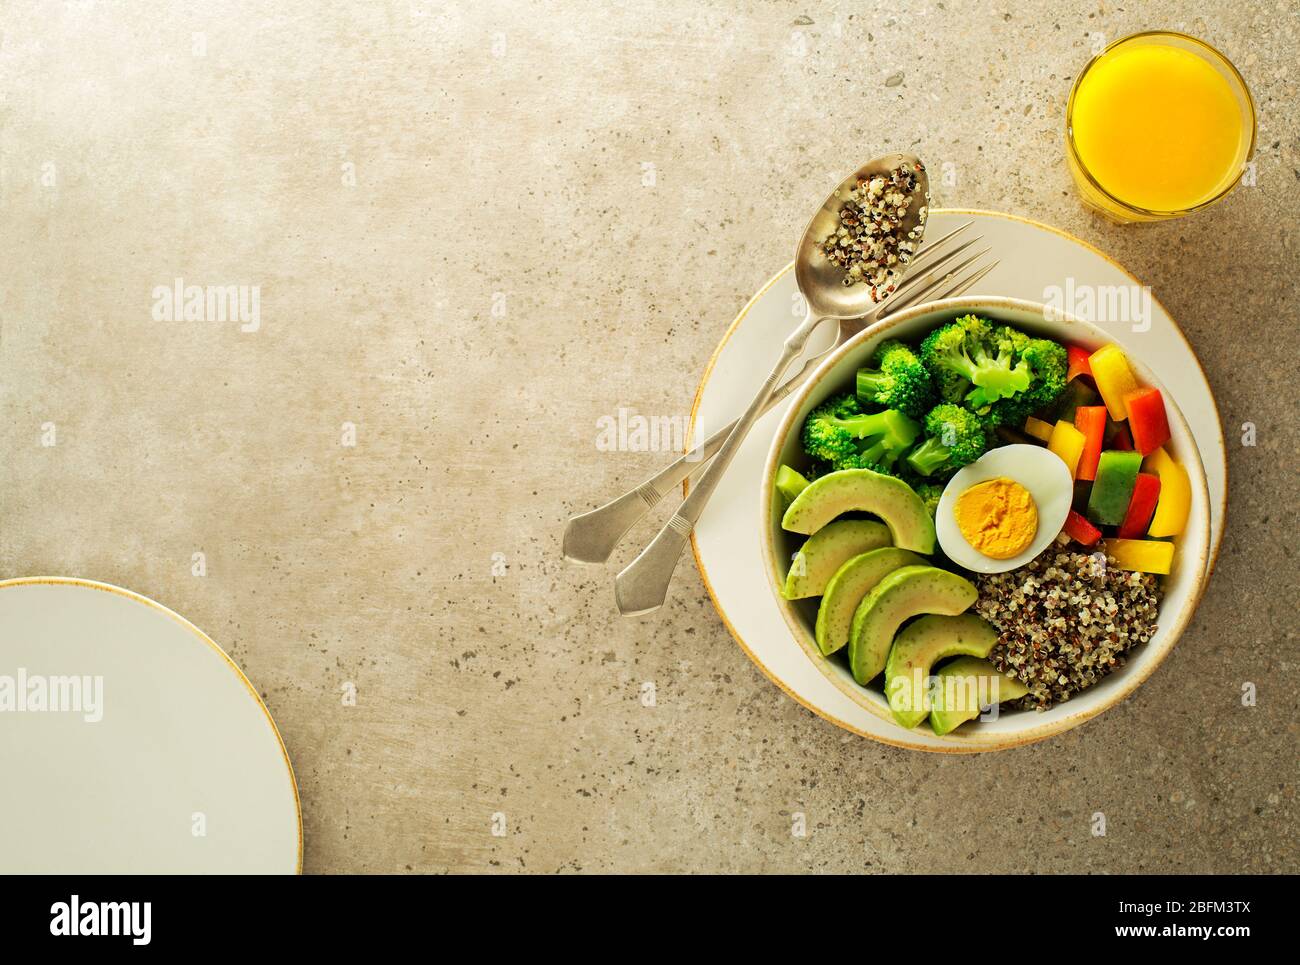 Repas de salade sain avec quinoa, oeuf, avocat et légumes frais mélangés sur fond gris vue de dessus. Alimentation et santé. Concept de repas sain Banque D'Images